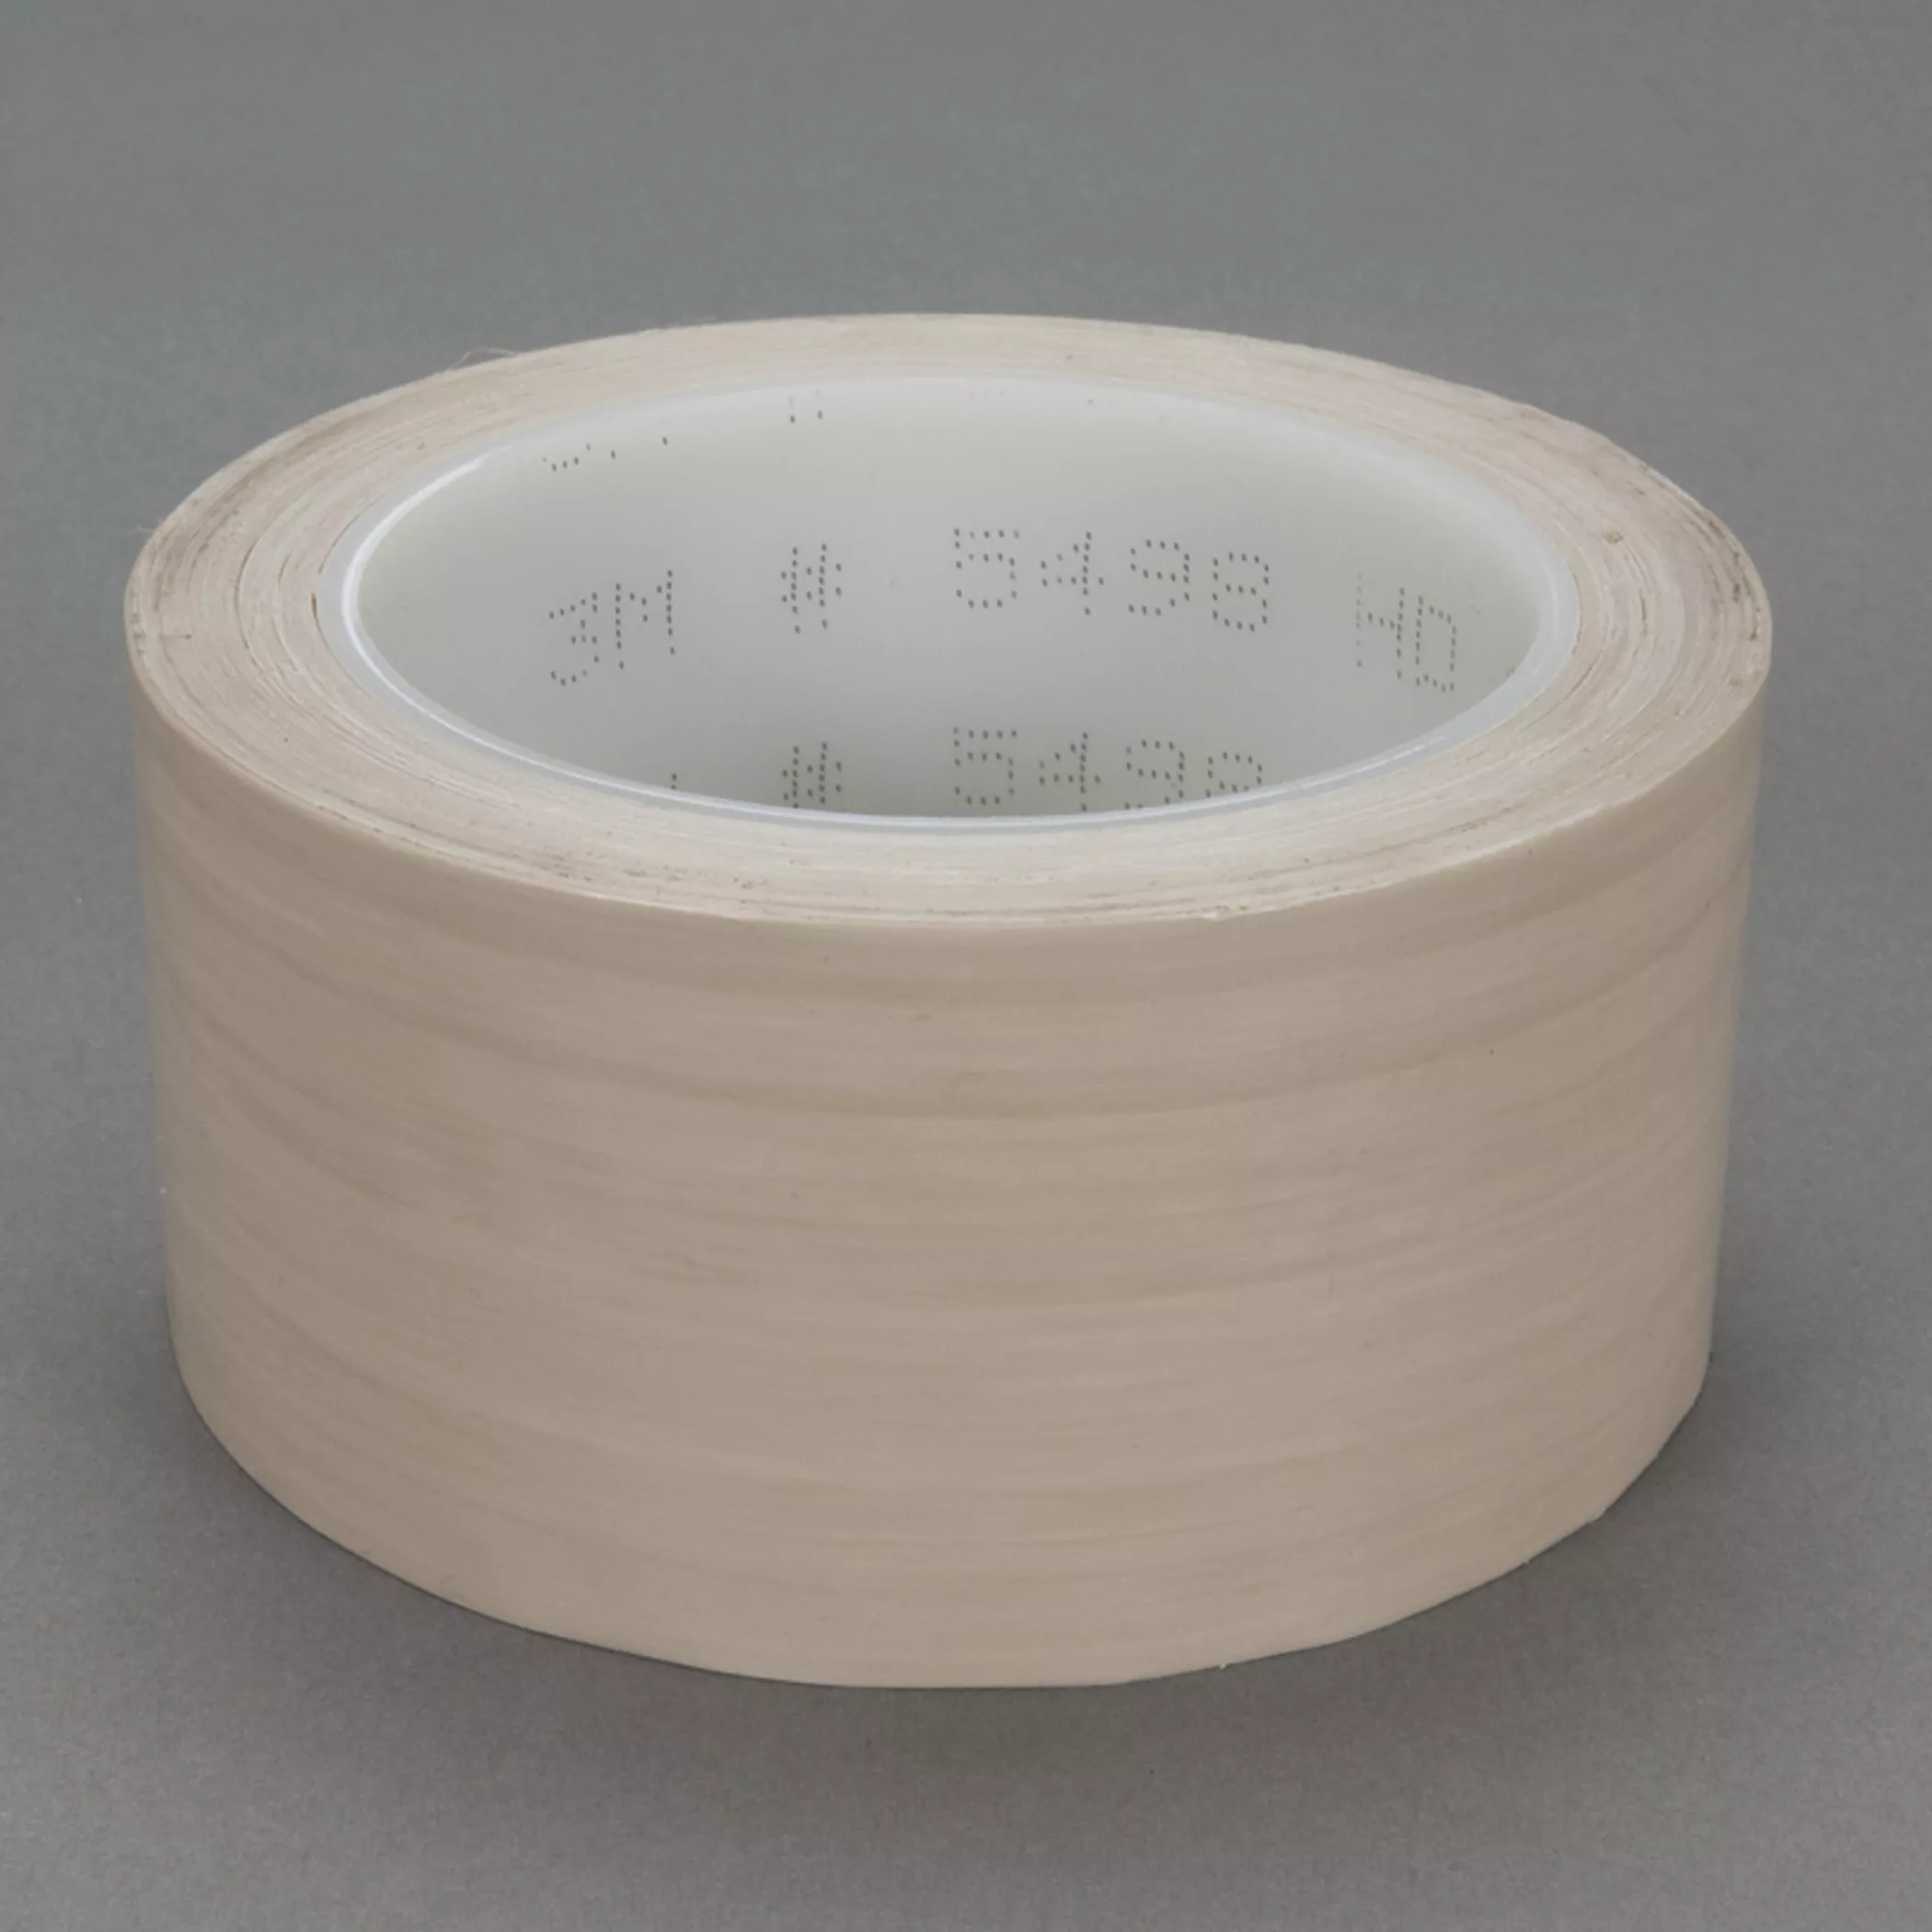 3M™ PTFE Film Tape 5498, Beige, 6 in x 36 yd, 4.2 mil, 8 Roll/Case